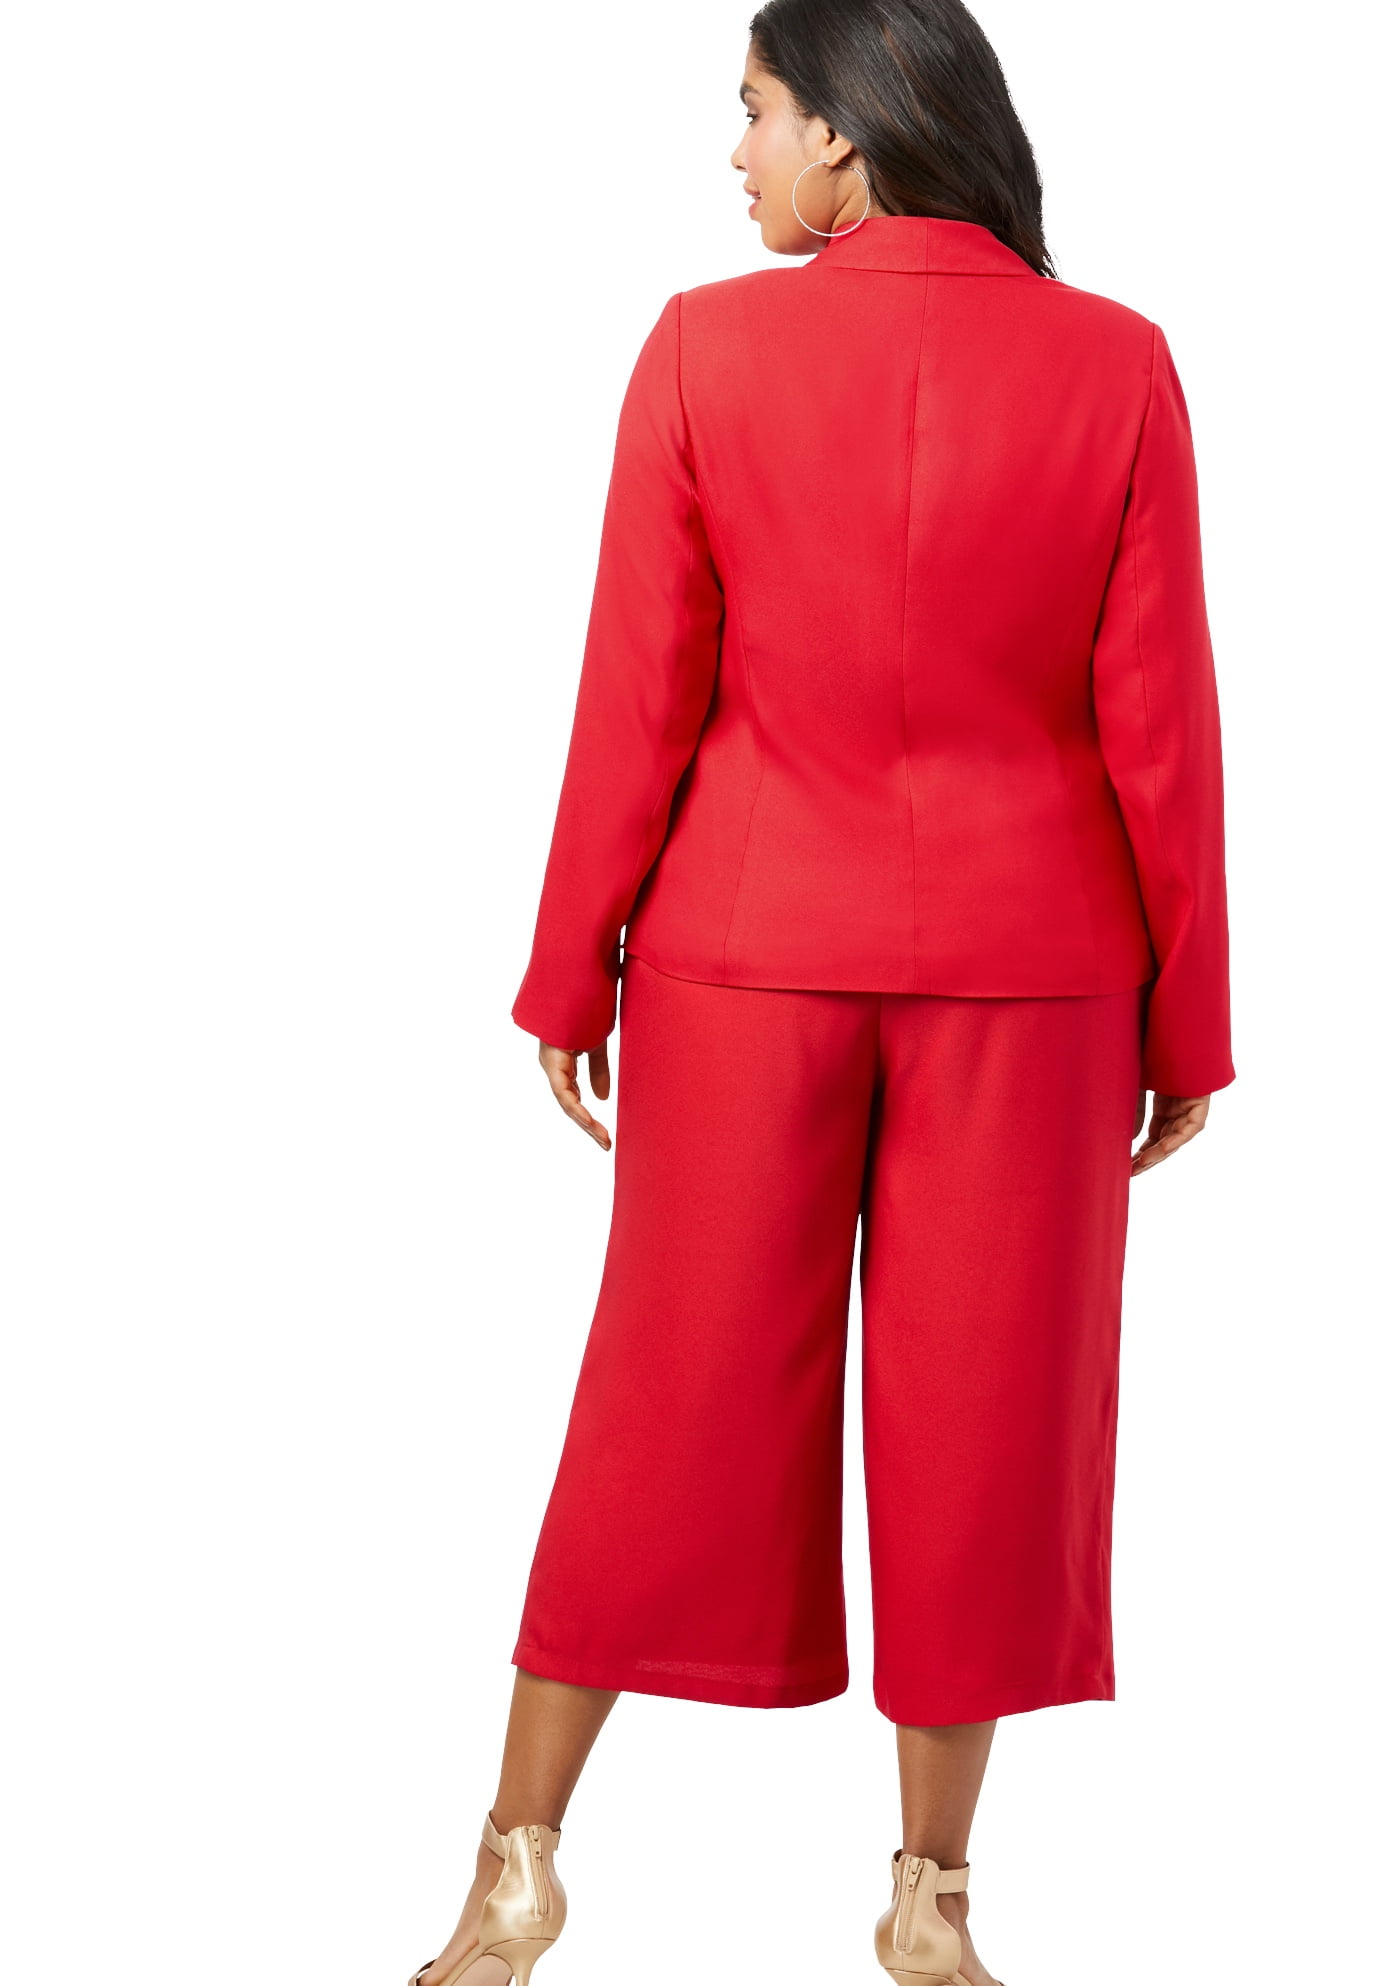 Roamans Womens Plus Size Two-Piece Blazer /& Culotte Set